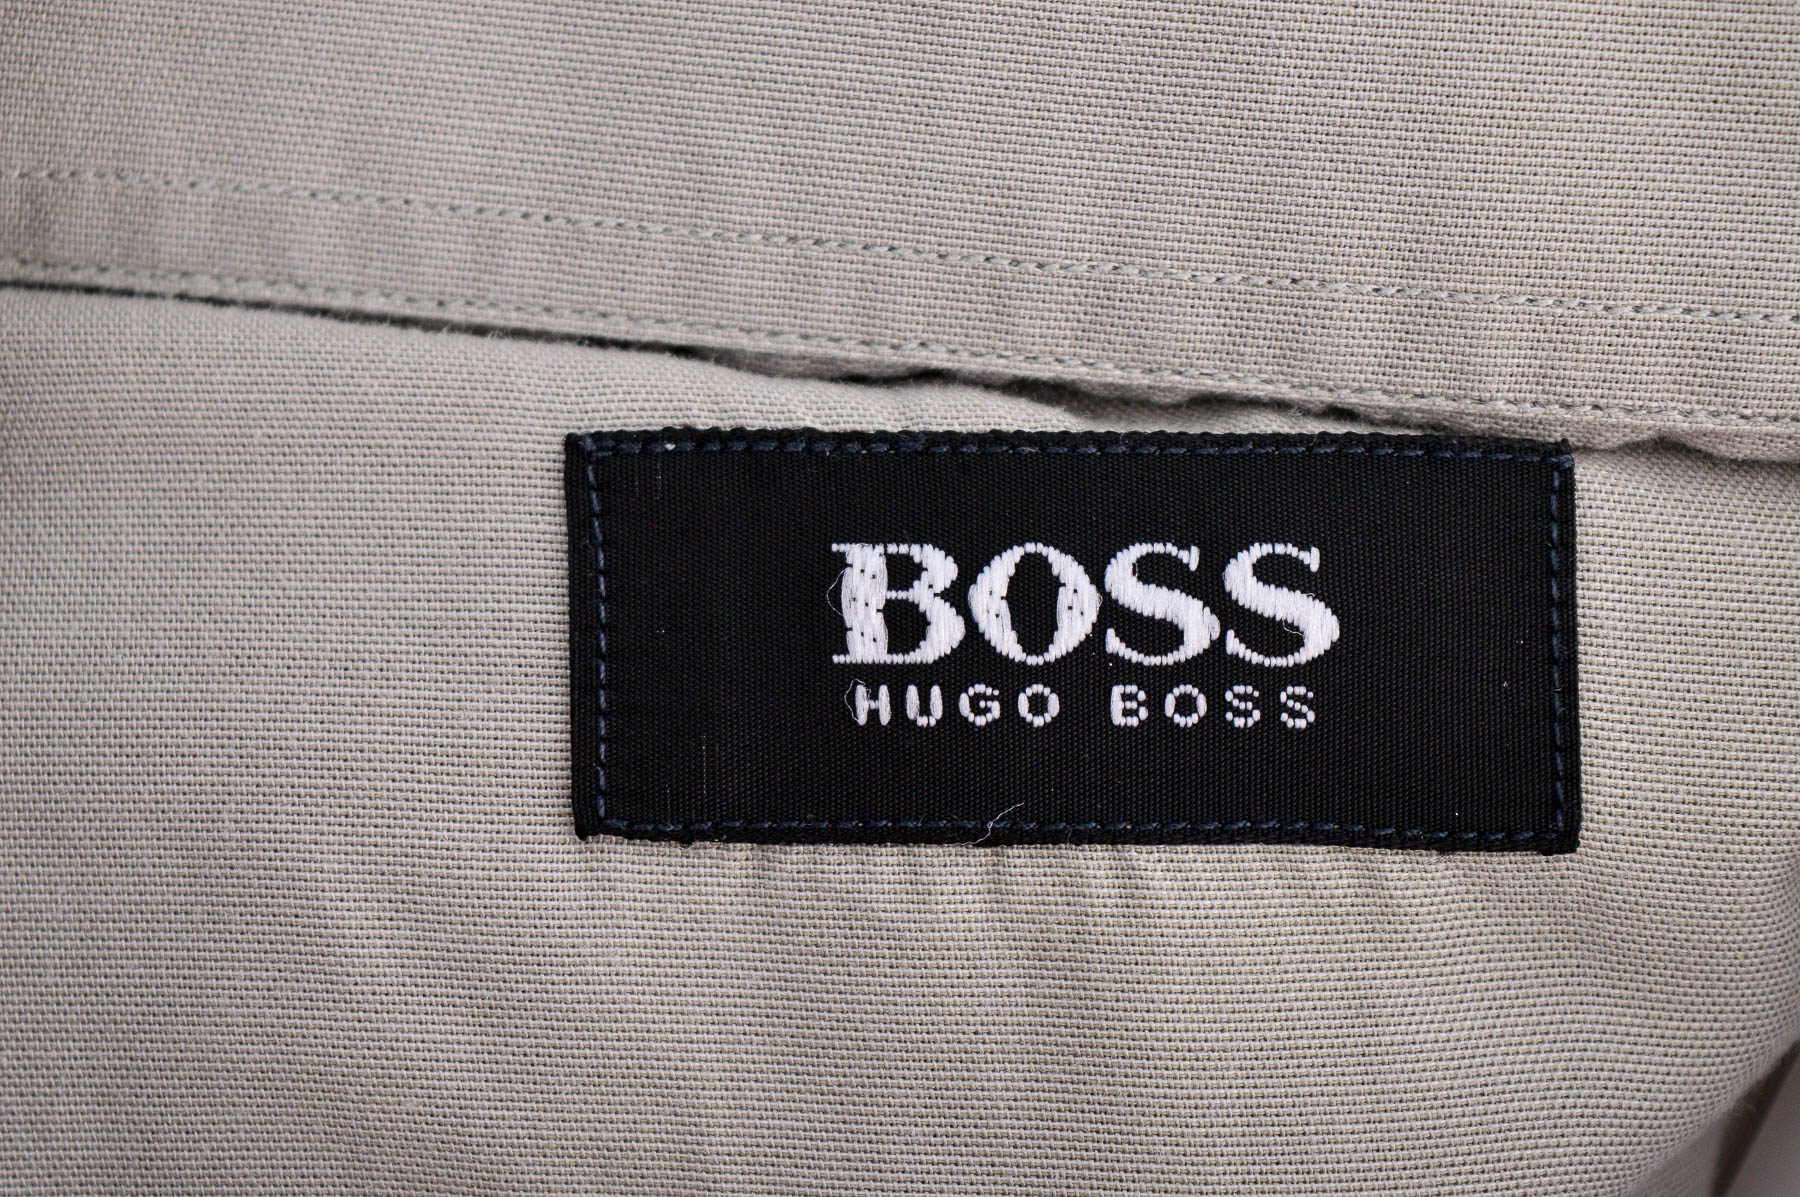 Men's shirt - HUGO BOSS - 2